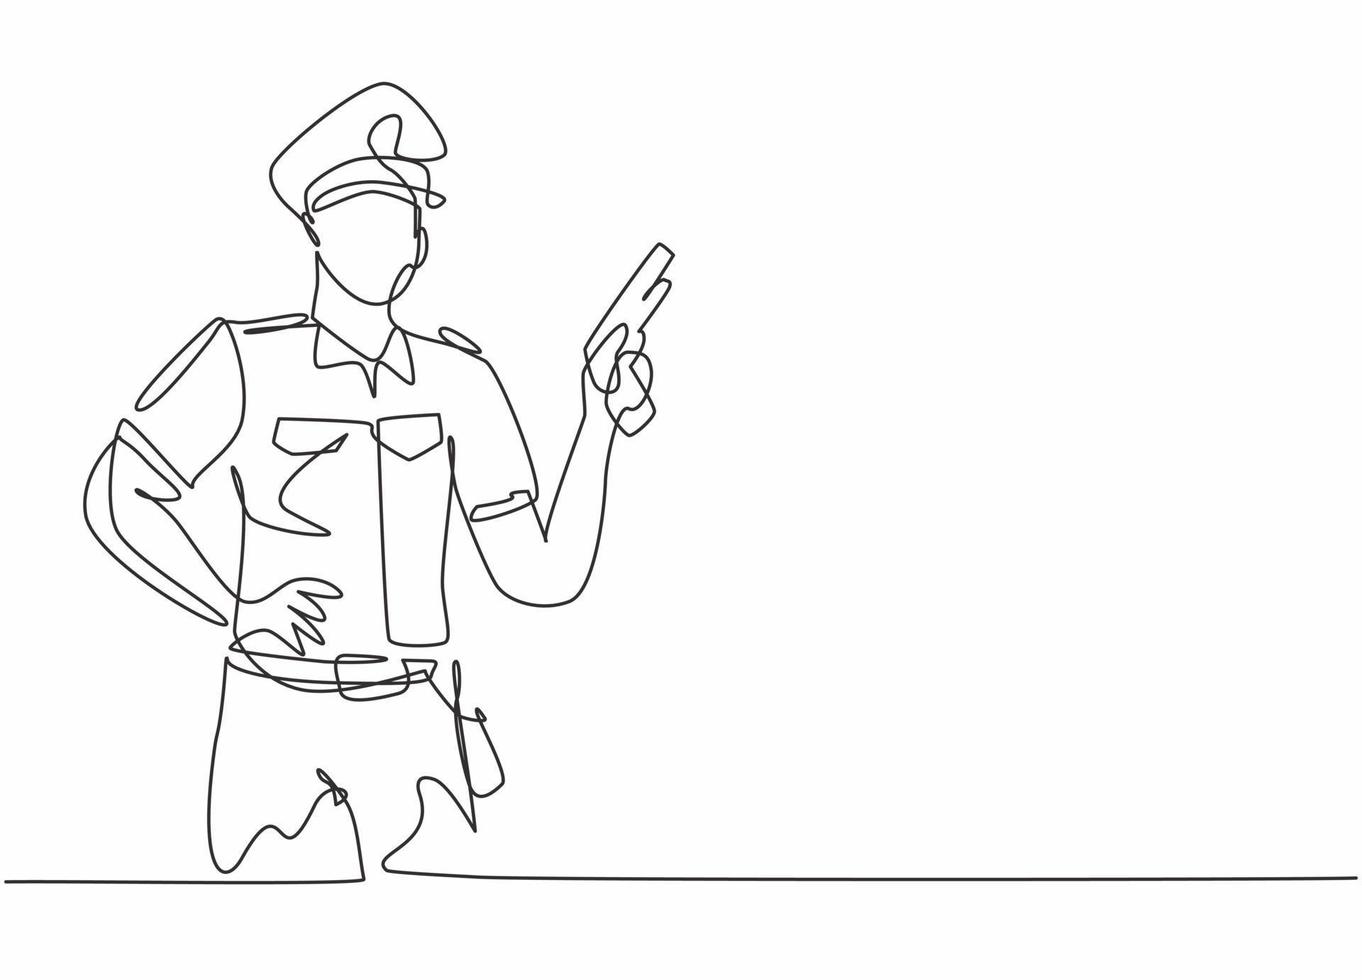 disegno continuo a una linea di un giovane poliziotto che indossa l'uniforme e tiene in mano una pistola revolver. concetto minimalista di professione di lavoro professionale. illustrazione grafica vettoriale di disegno di disegno a linea singola